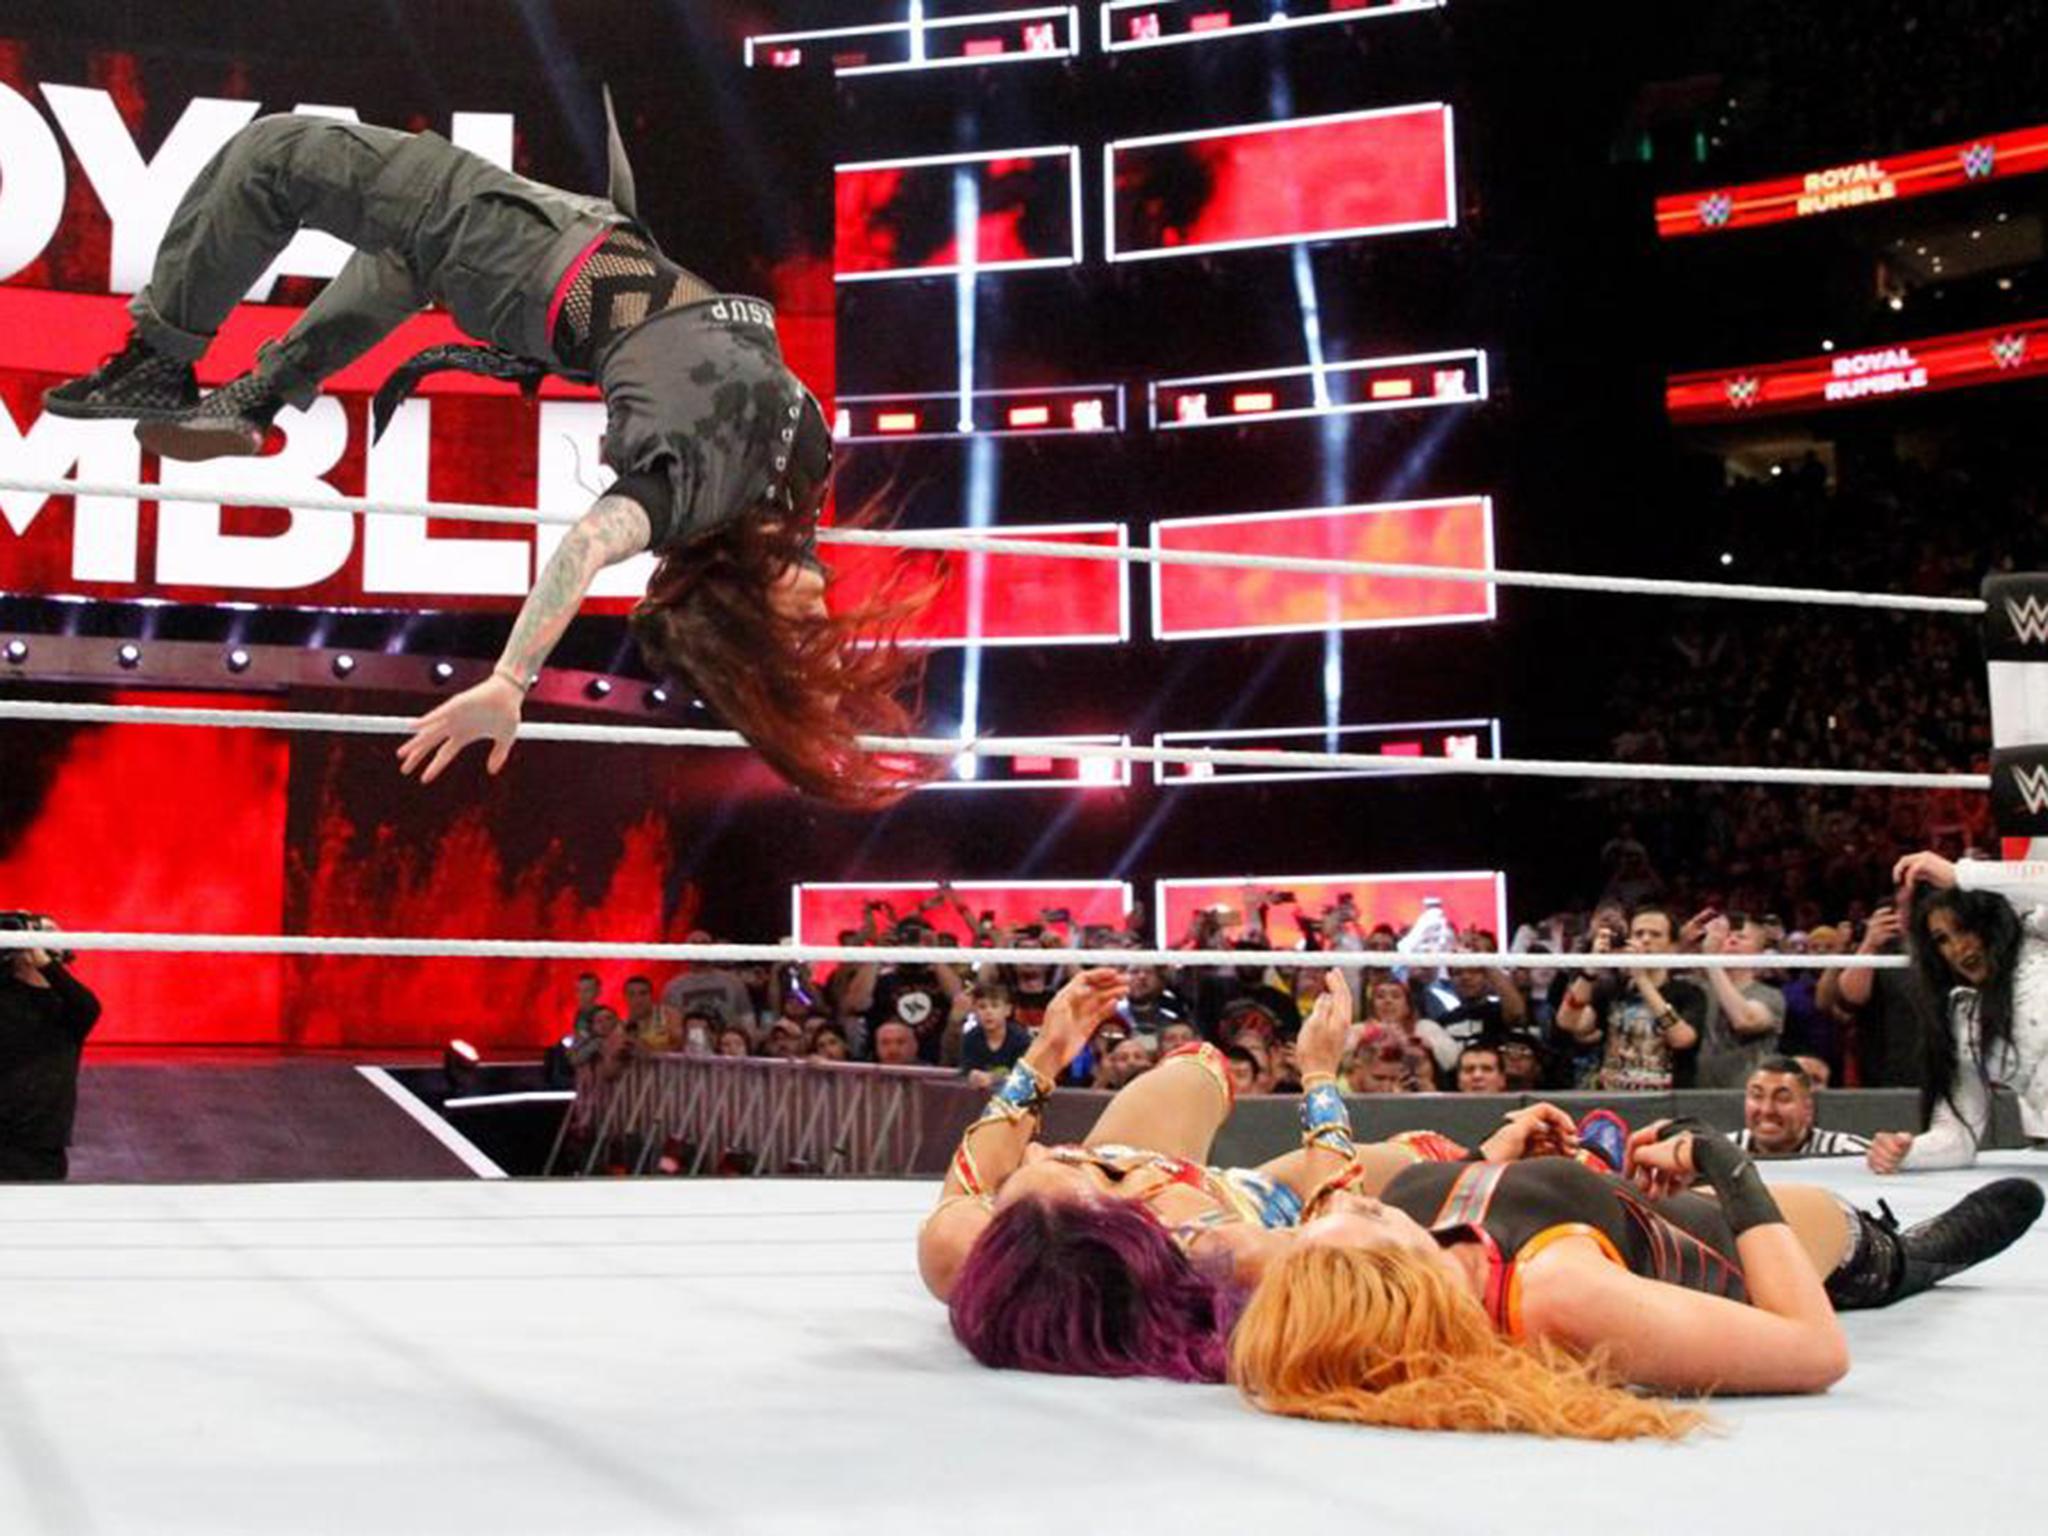 Lita moonsaults onto Sasha Banks and Becky Lynch